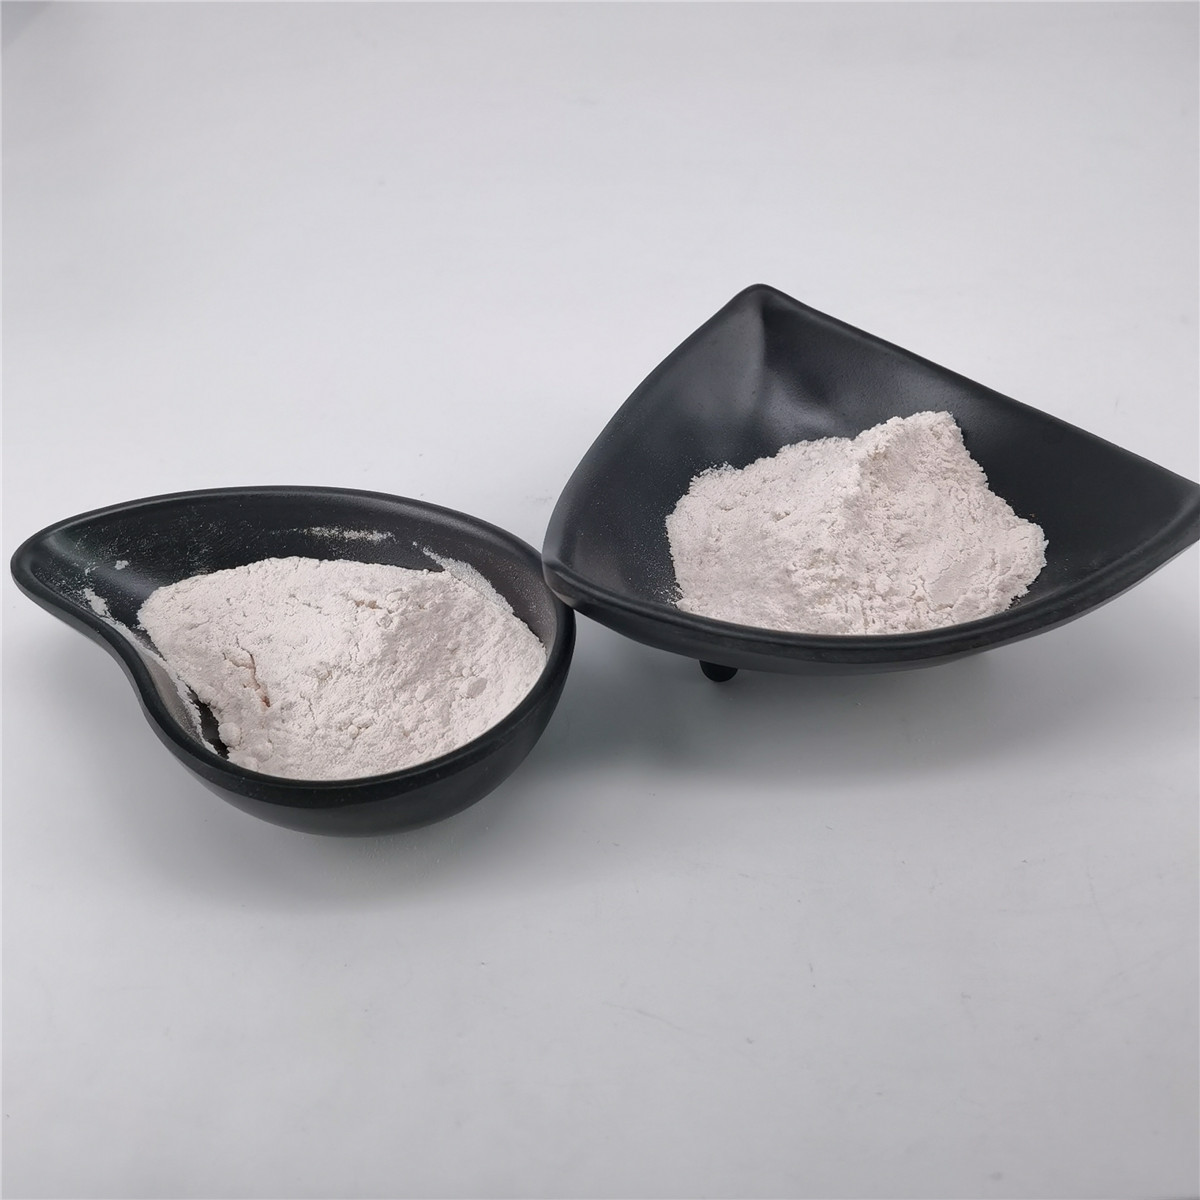  Whitening Anti Wrinkle Superoxide Dismutase Powder CAS 9054-89-1 Manufactures